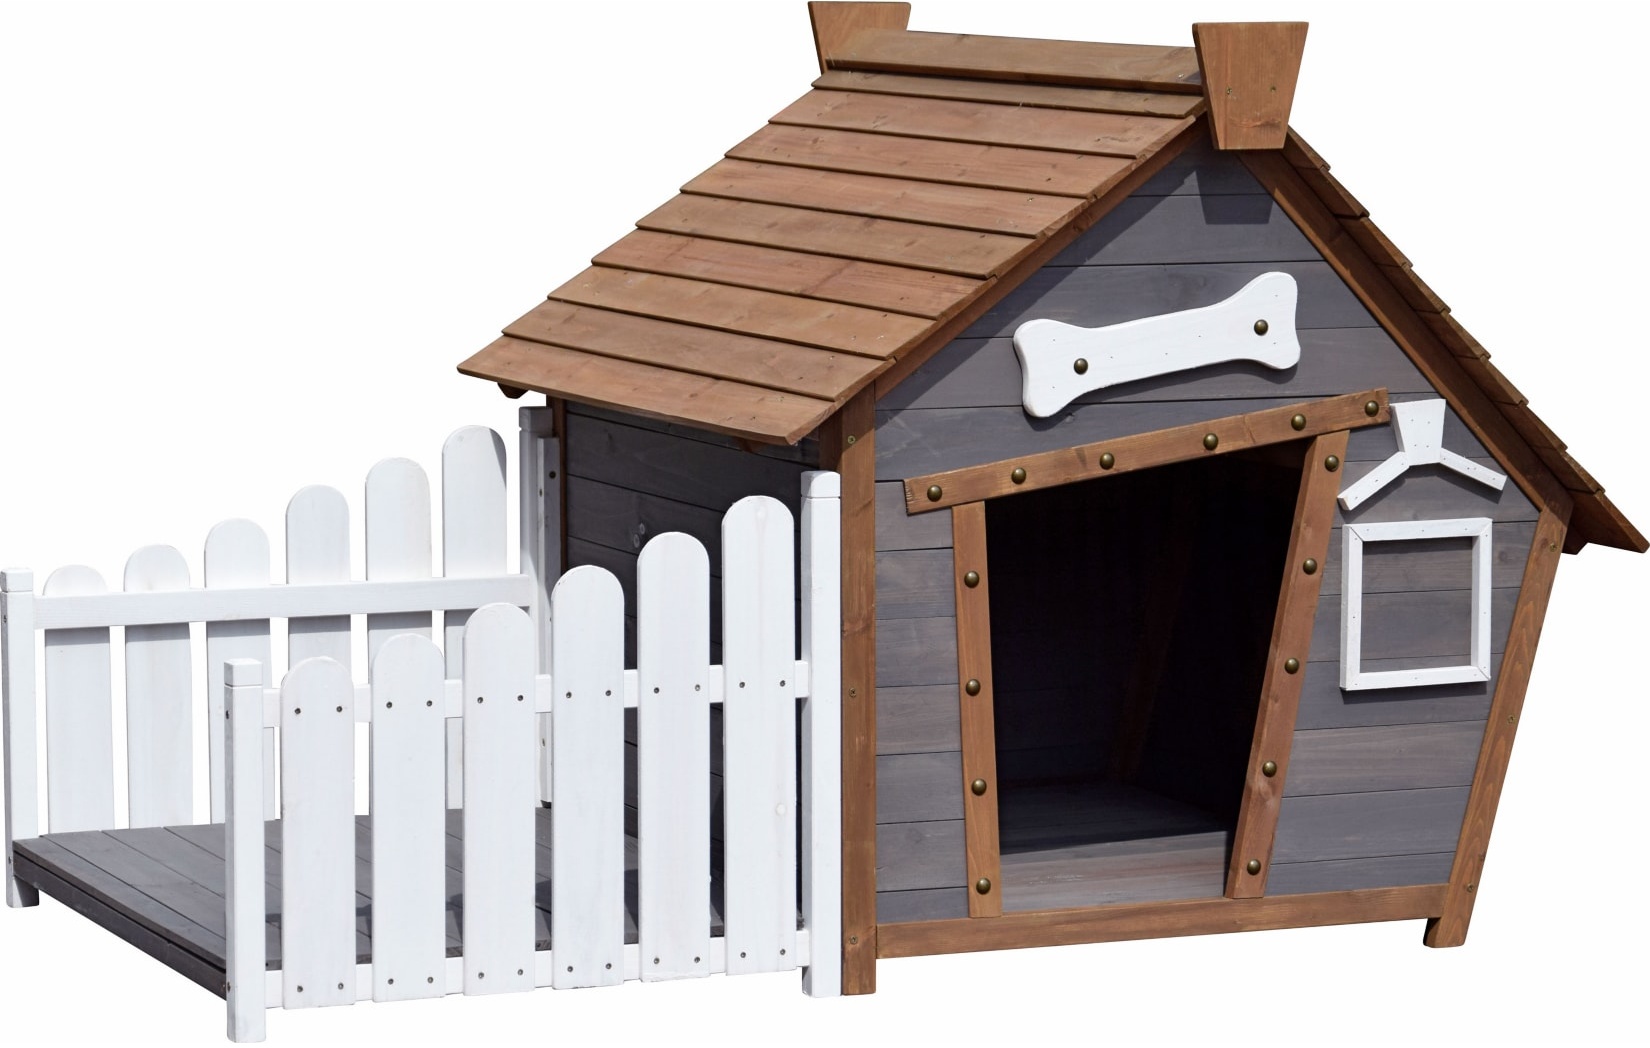 Dobar Outdoor-Hundehütte mit Spitzdach und seitlicher Veranda